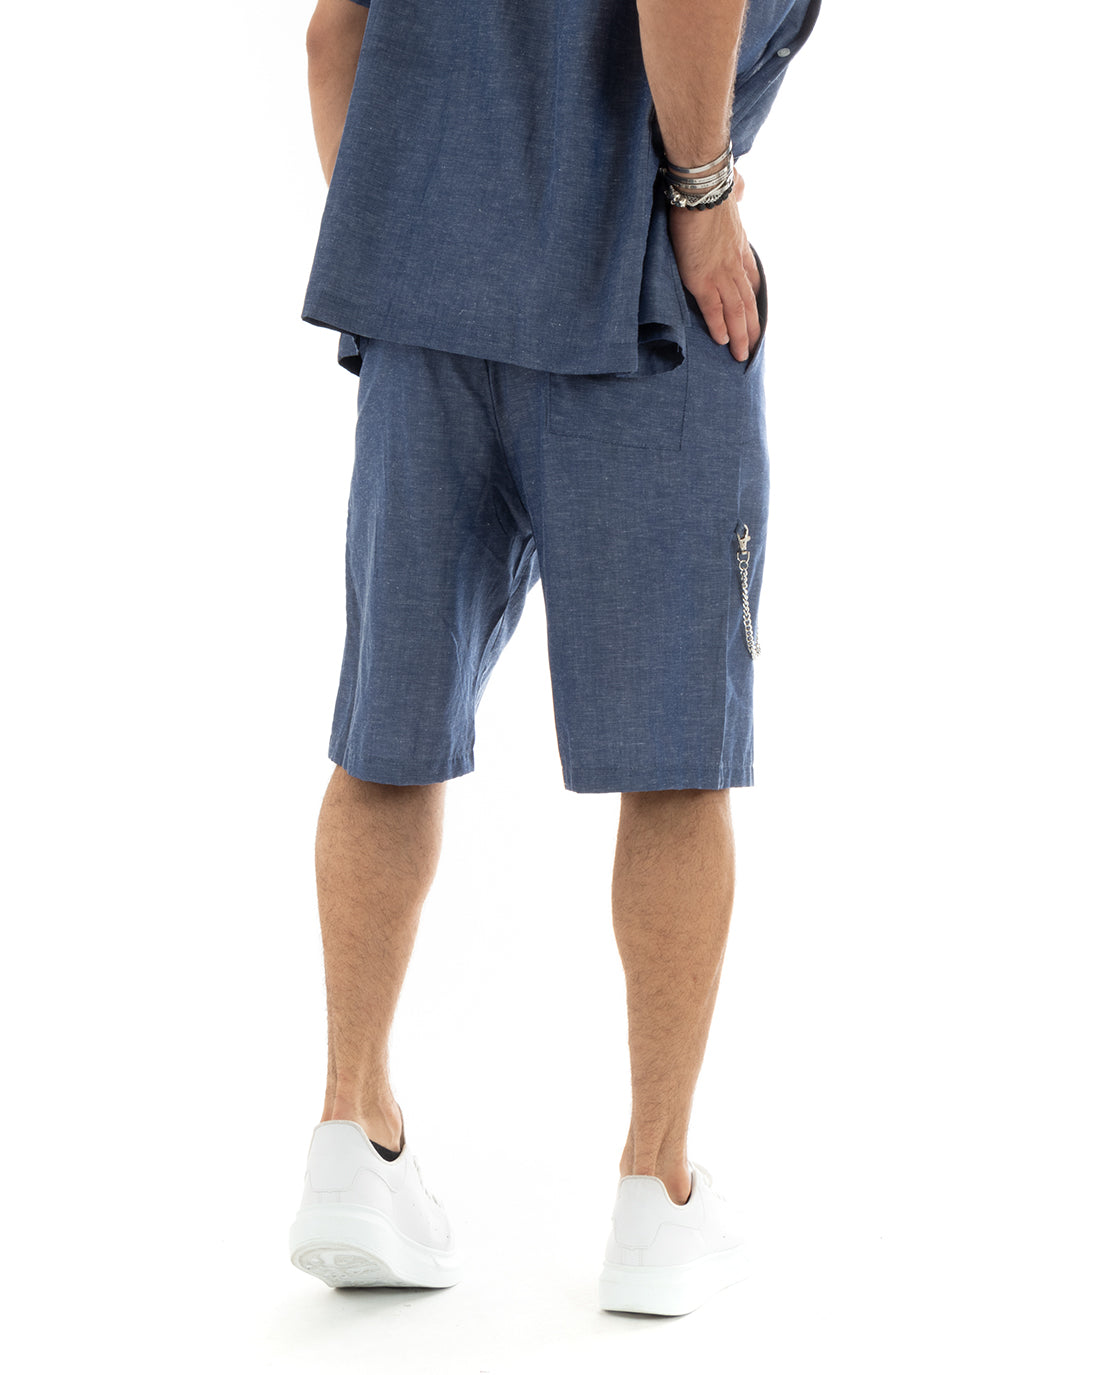 Completo Set Coordinato Uomo Viscosa Camicia Con Colletto Bermuda Outfit Denim Blu GIOSAL-OU2356A